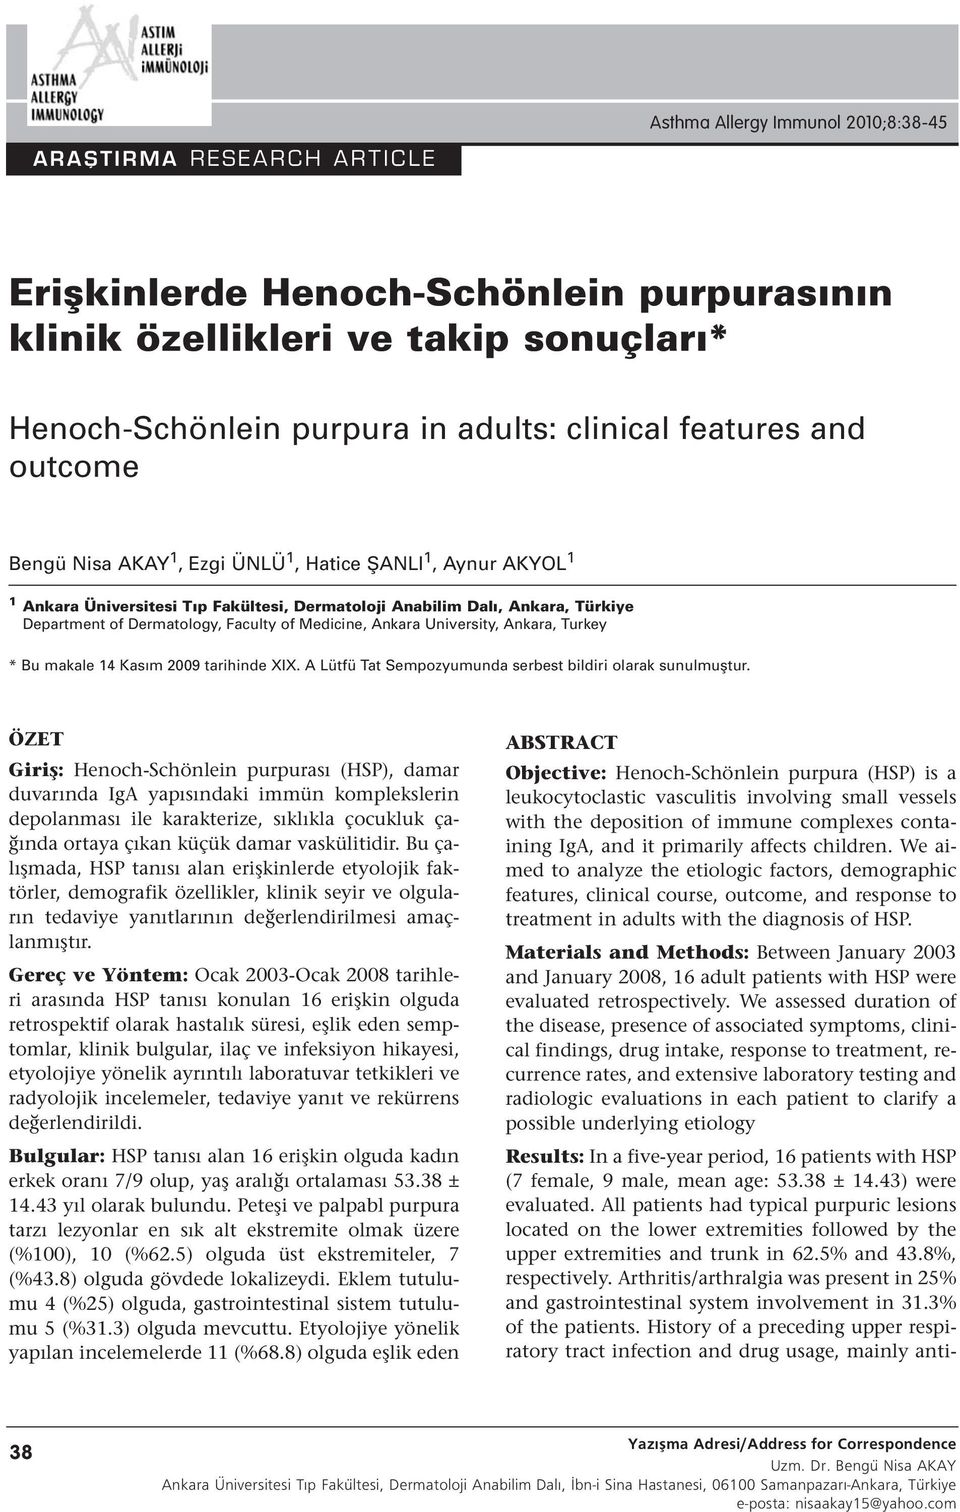 Medicine, Ankara University, Ankara, Turkey * Bu makale 14 Kasım 2009 tarihinde XIX. A Lütfü Tat Sempozyumunda serbest bildiri olarak sunulmuştur.